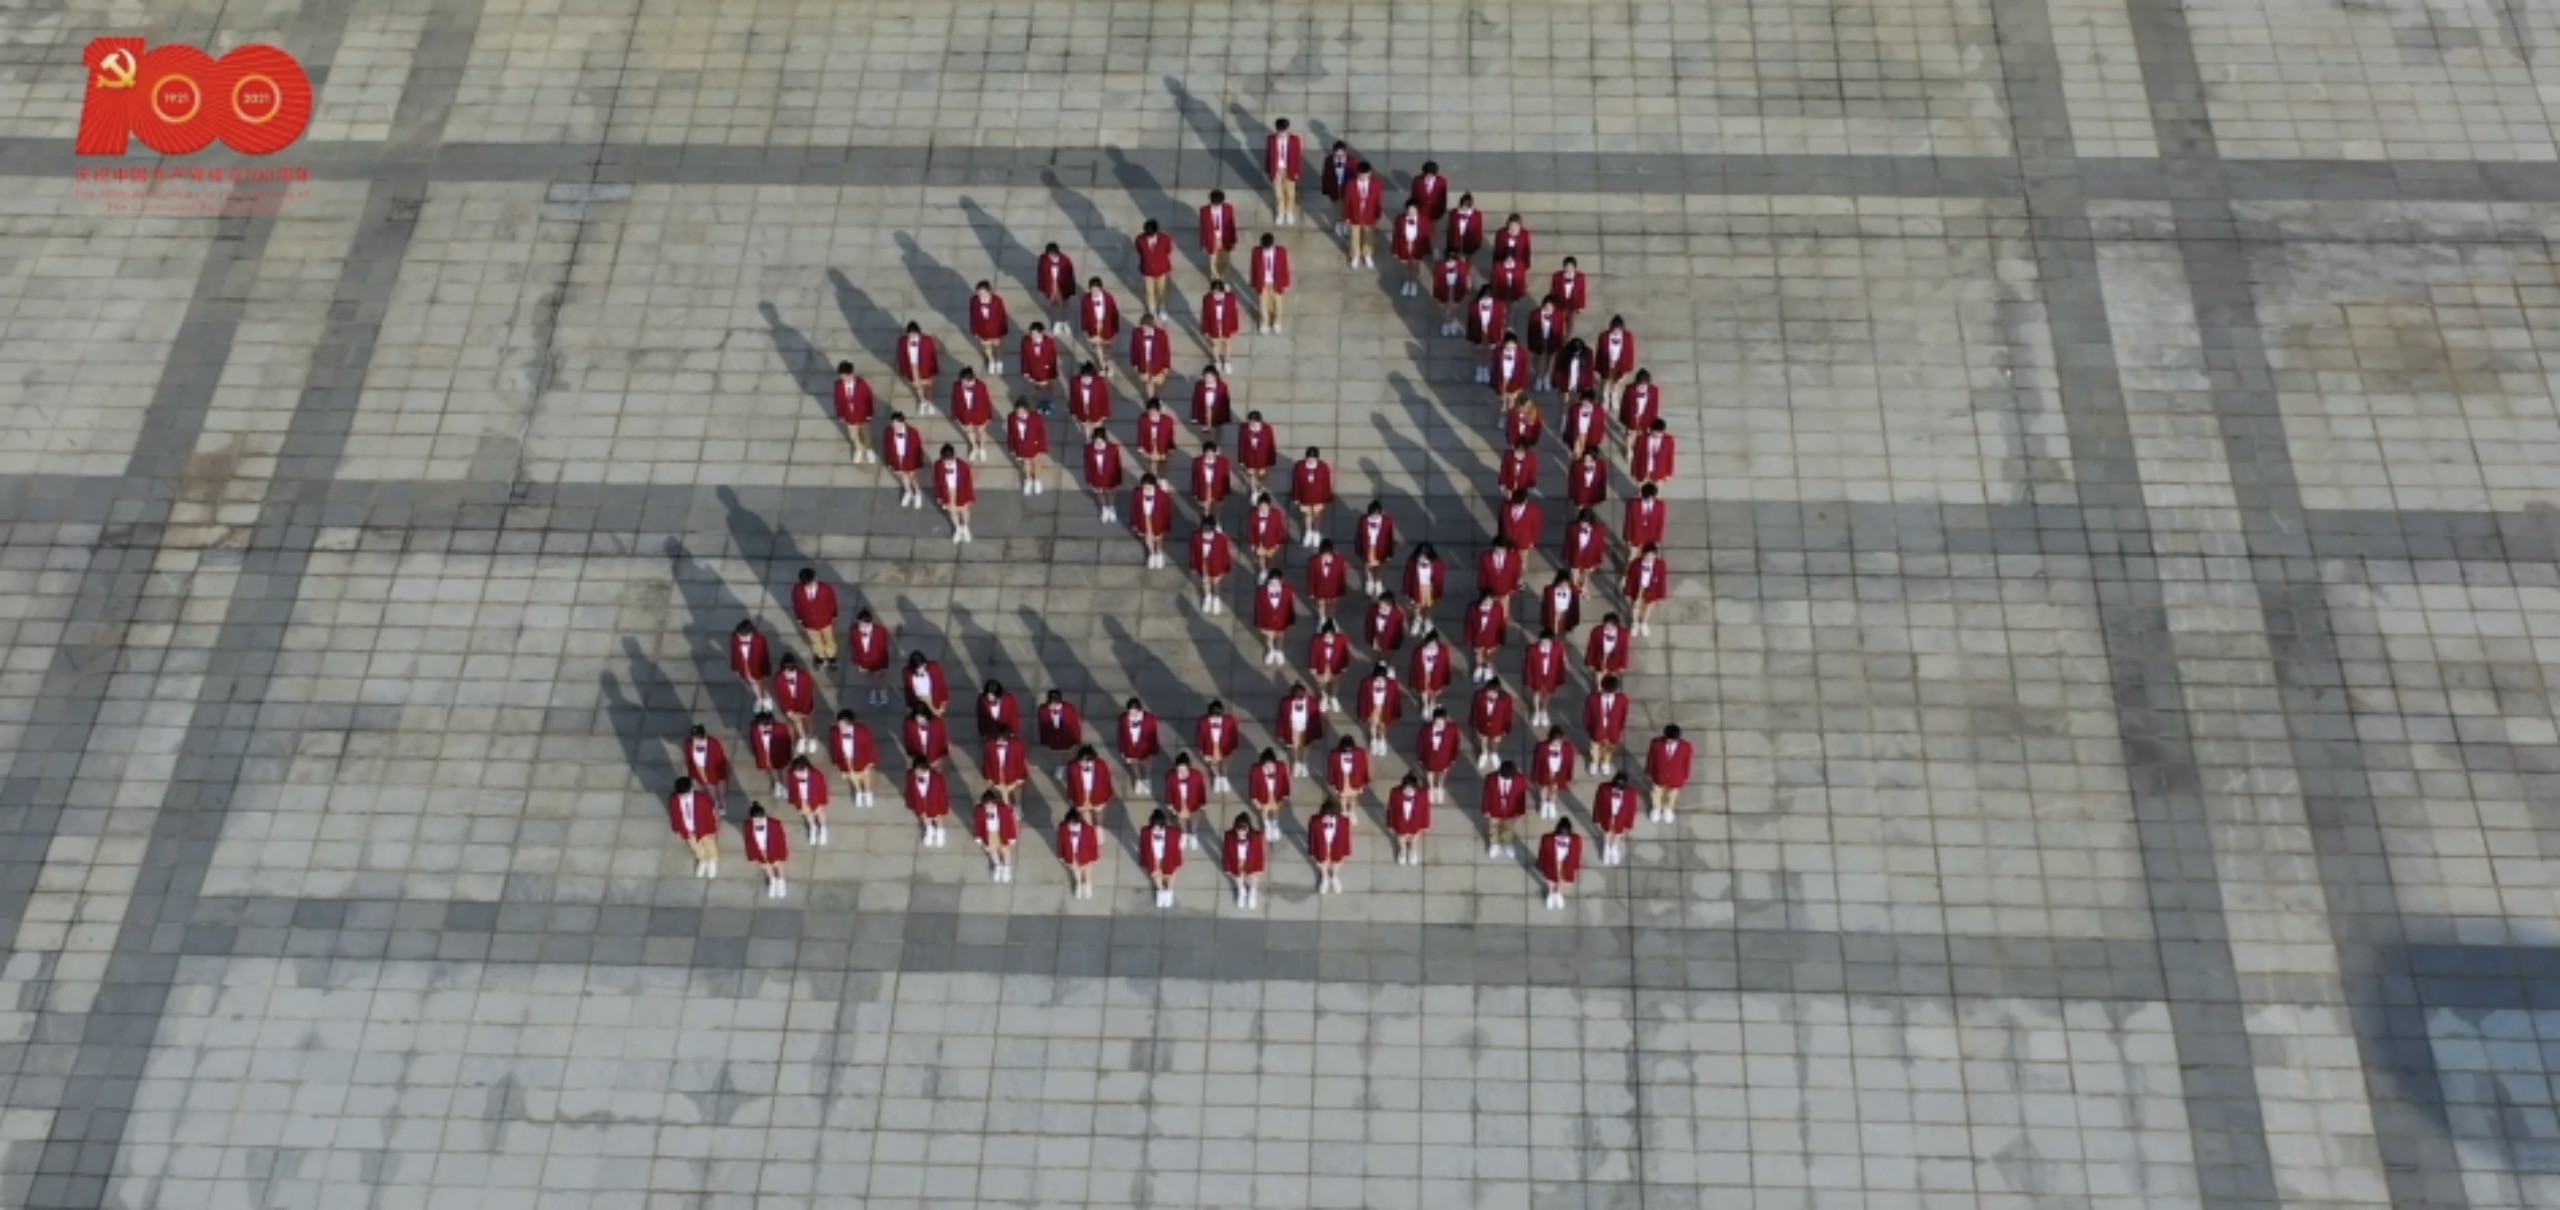 珠海科技学院100名师生摆出党徽图案